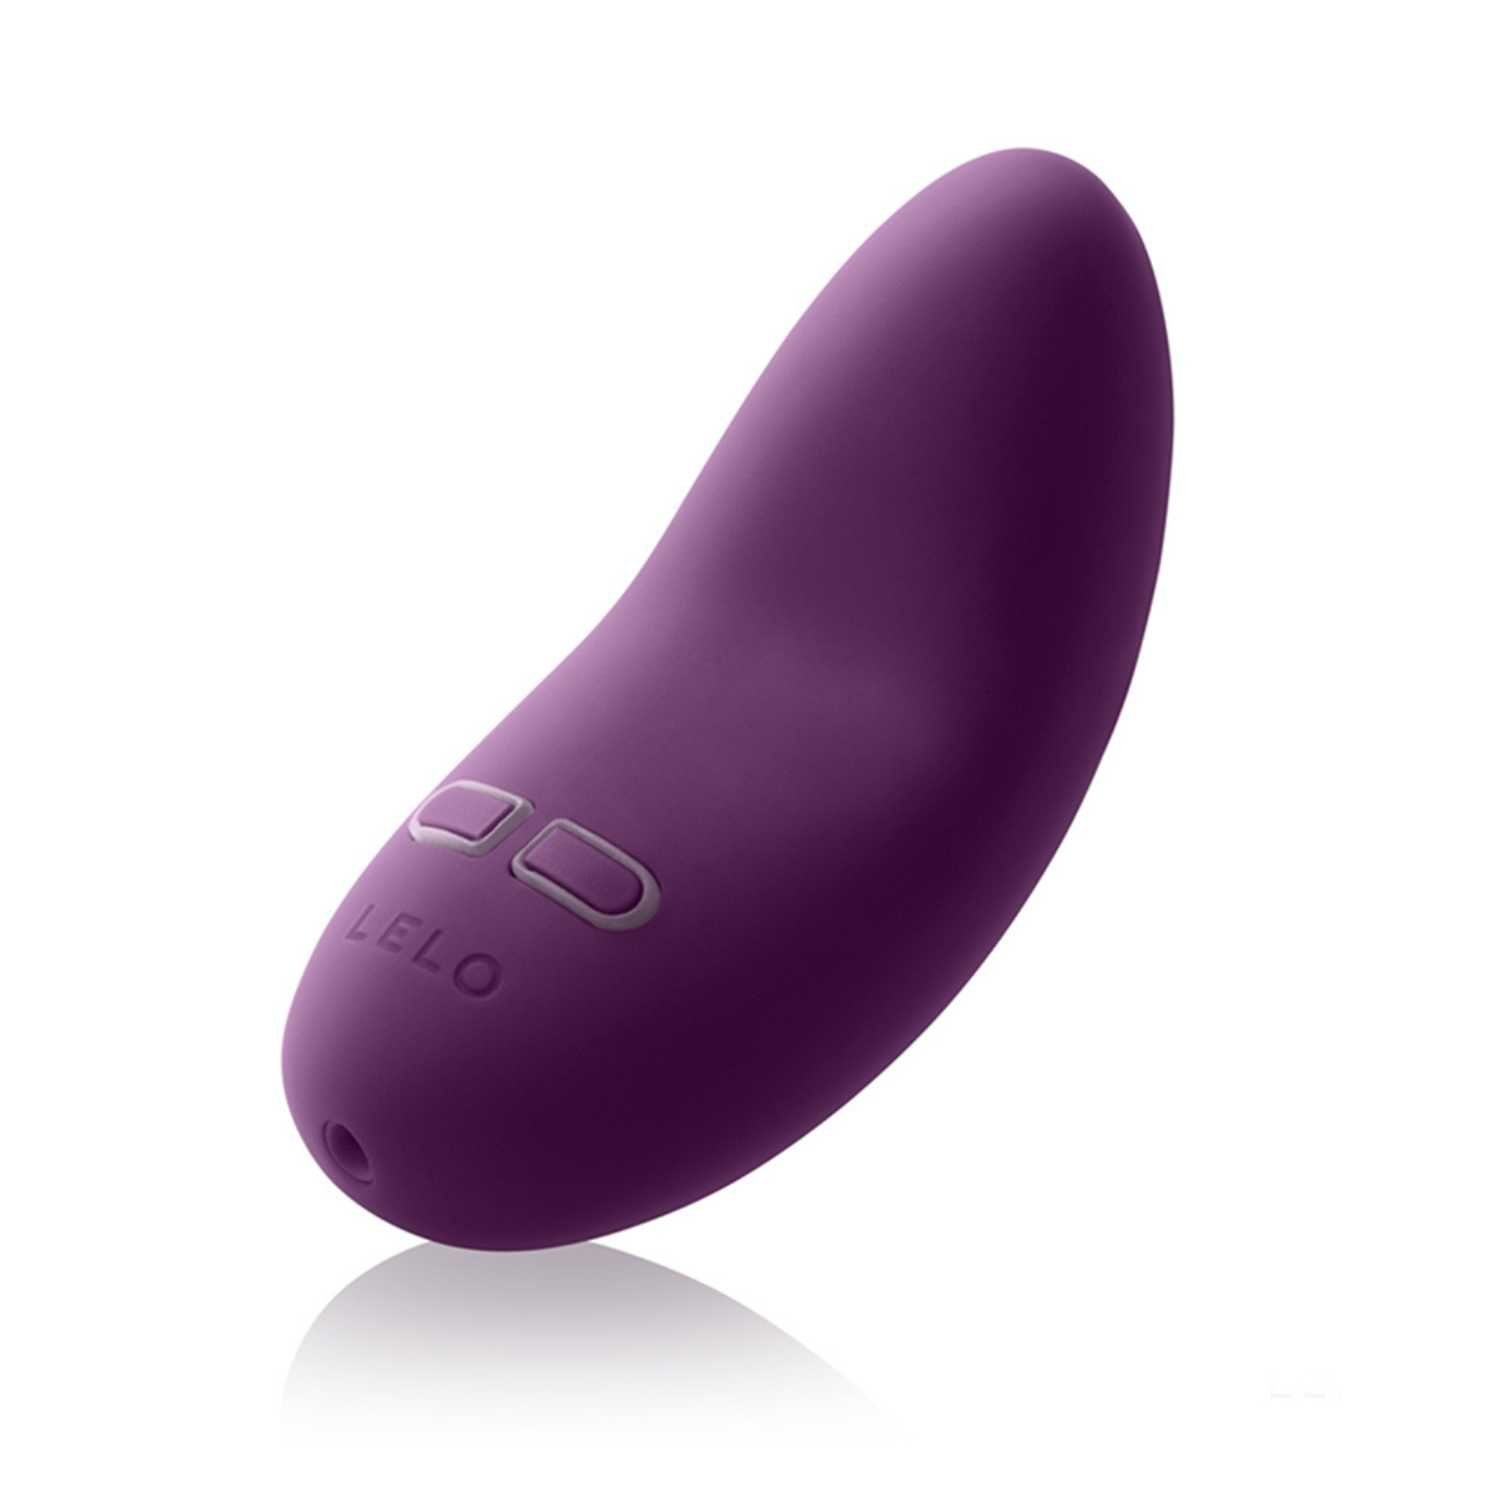 2 Auflege-Vibrator Lelo Lelo LILY violett